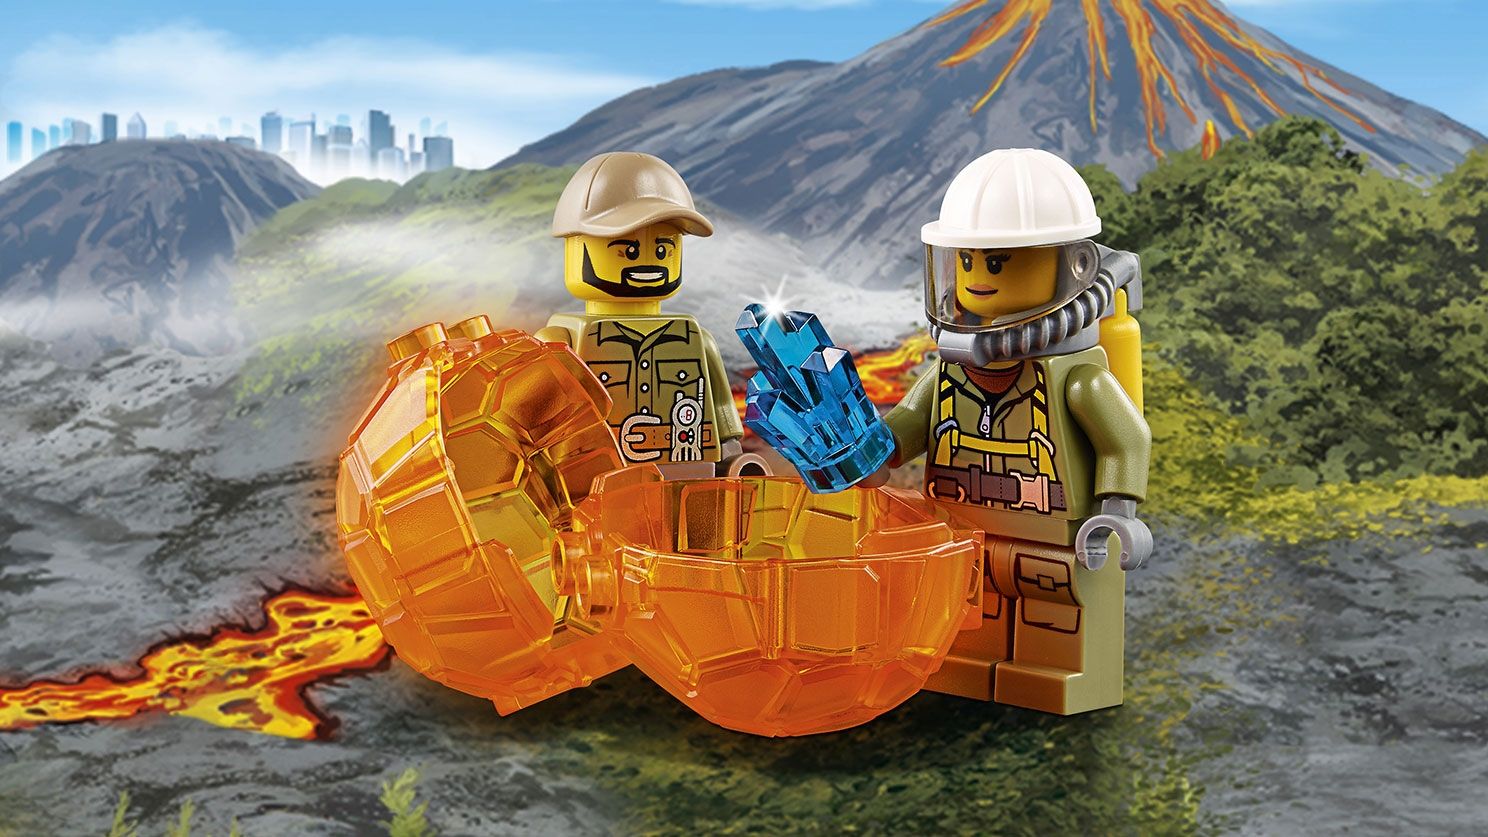 LEGO City 60121 Vulkan-Forschungstruck LEGO_60121_WEB_SEC04_1488.jpg